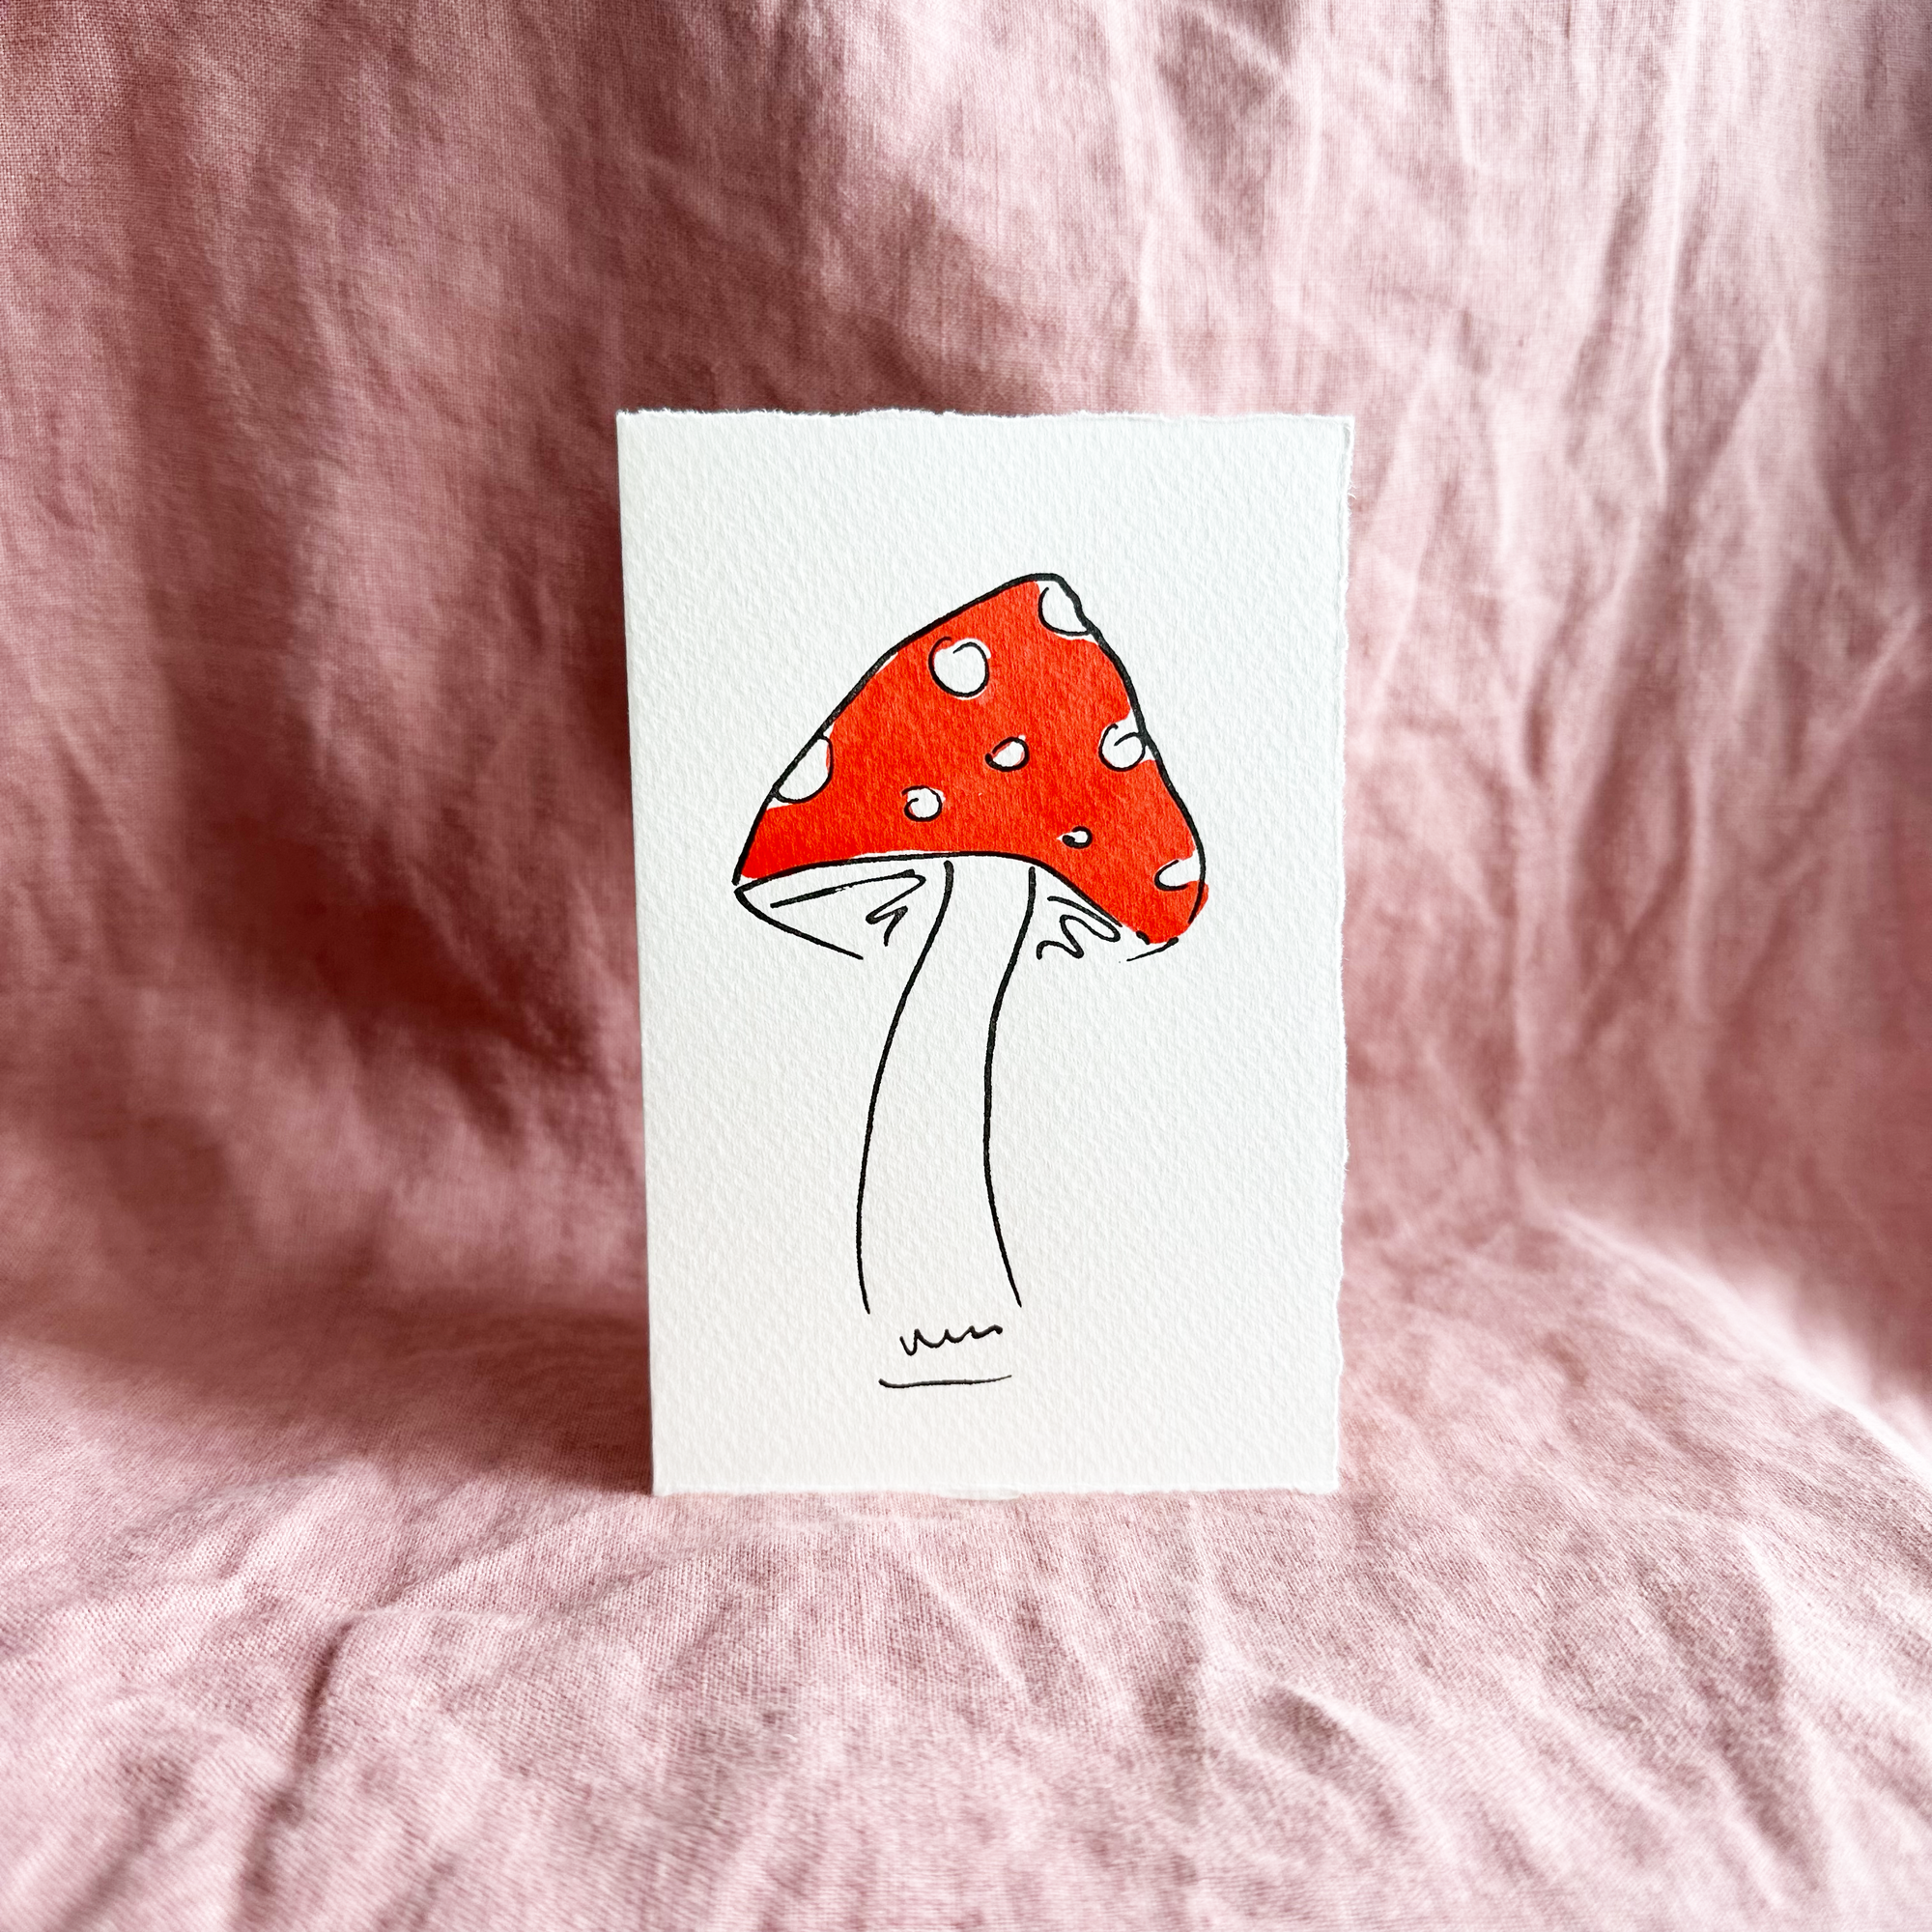 scribble_and_daub_mushroom_card